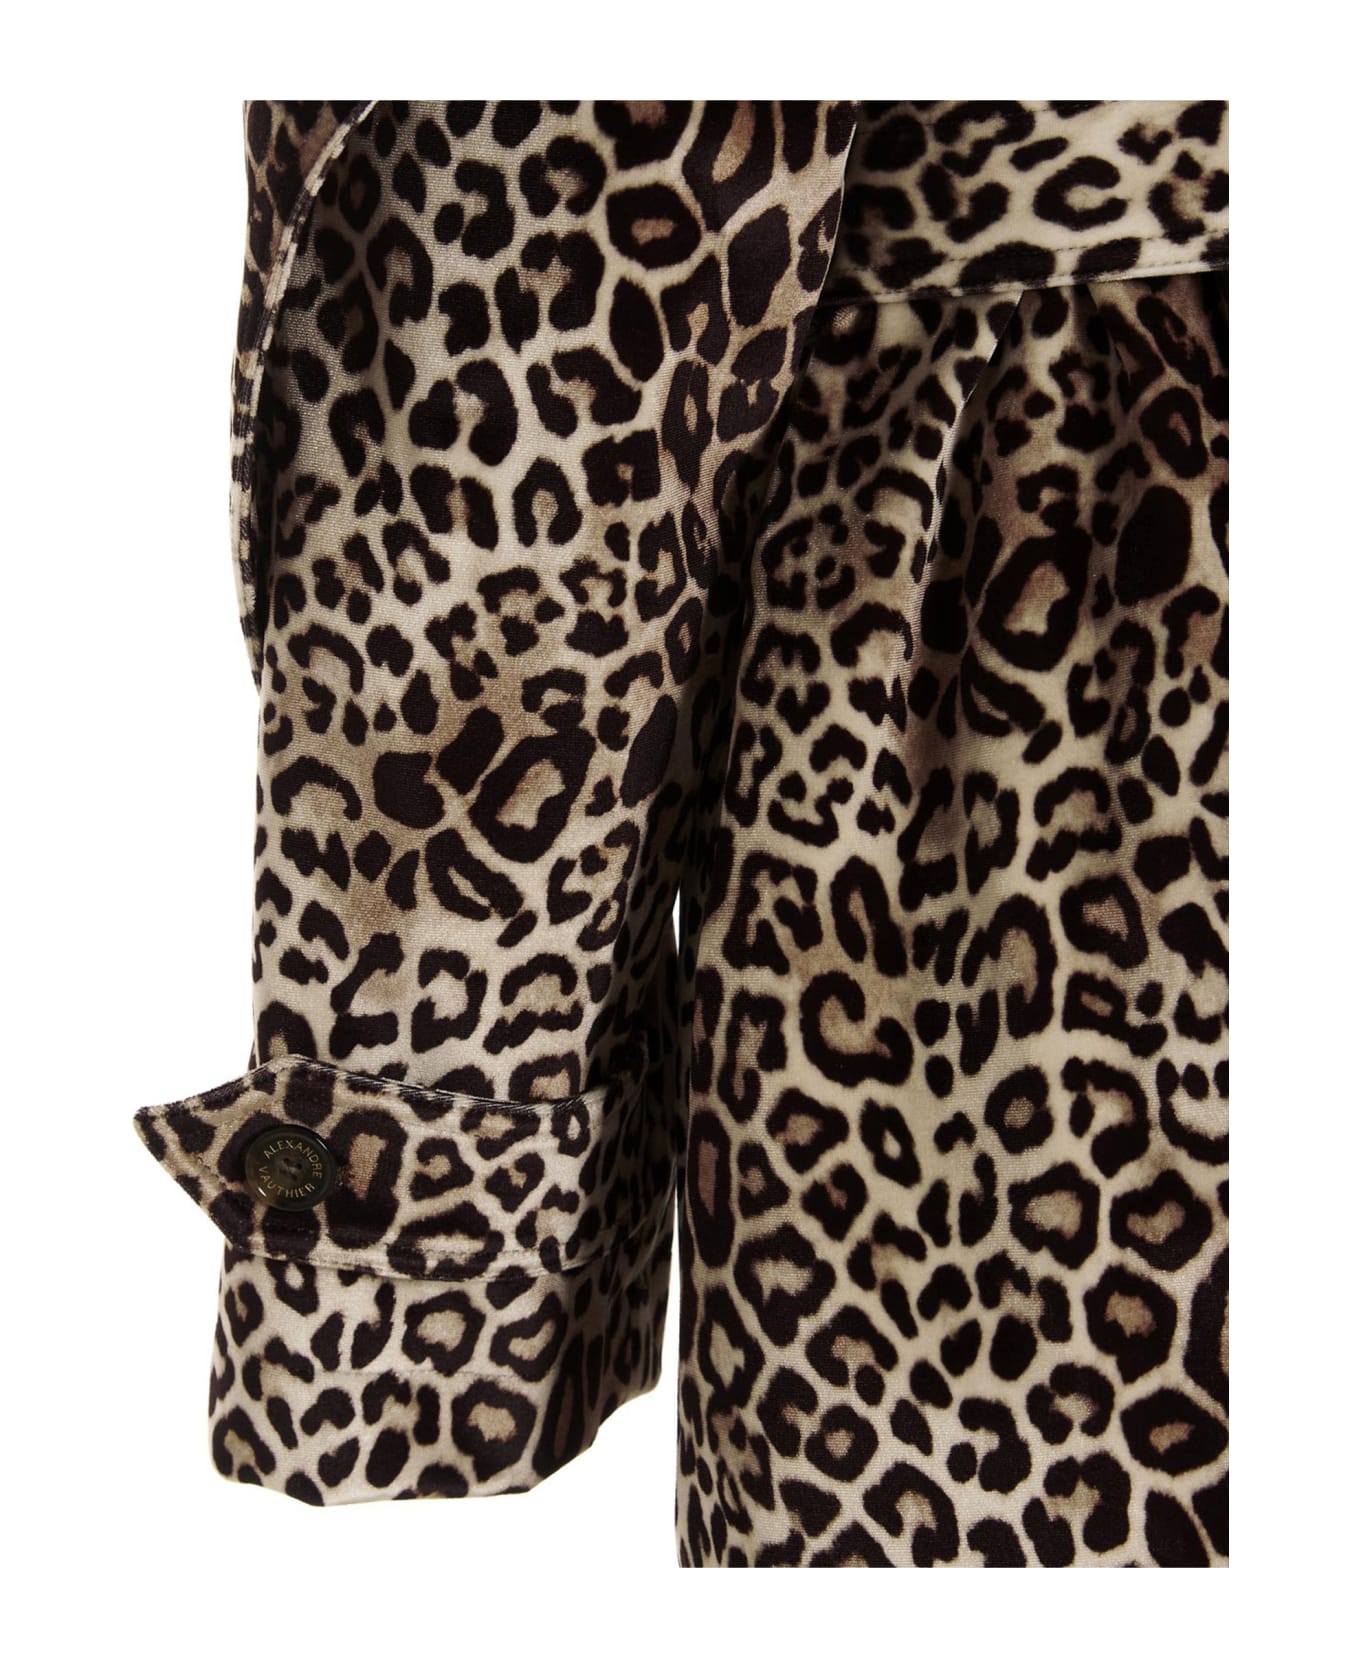 Alexandre Vauthier Leopard Velvet Trench Coat - Multicolor レインコート